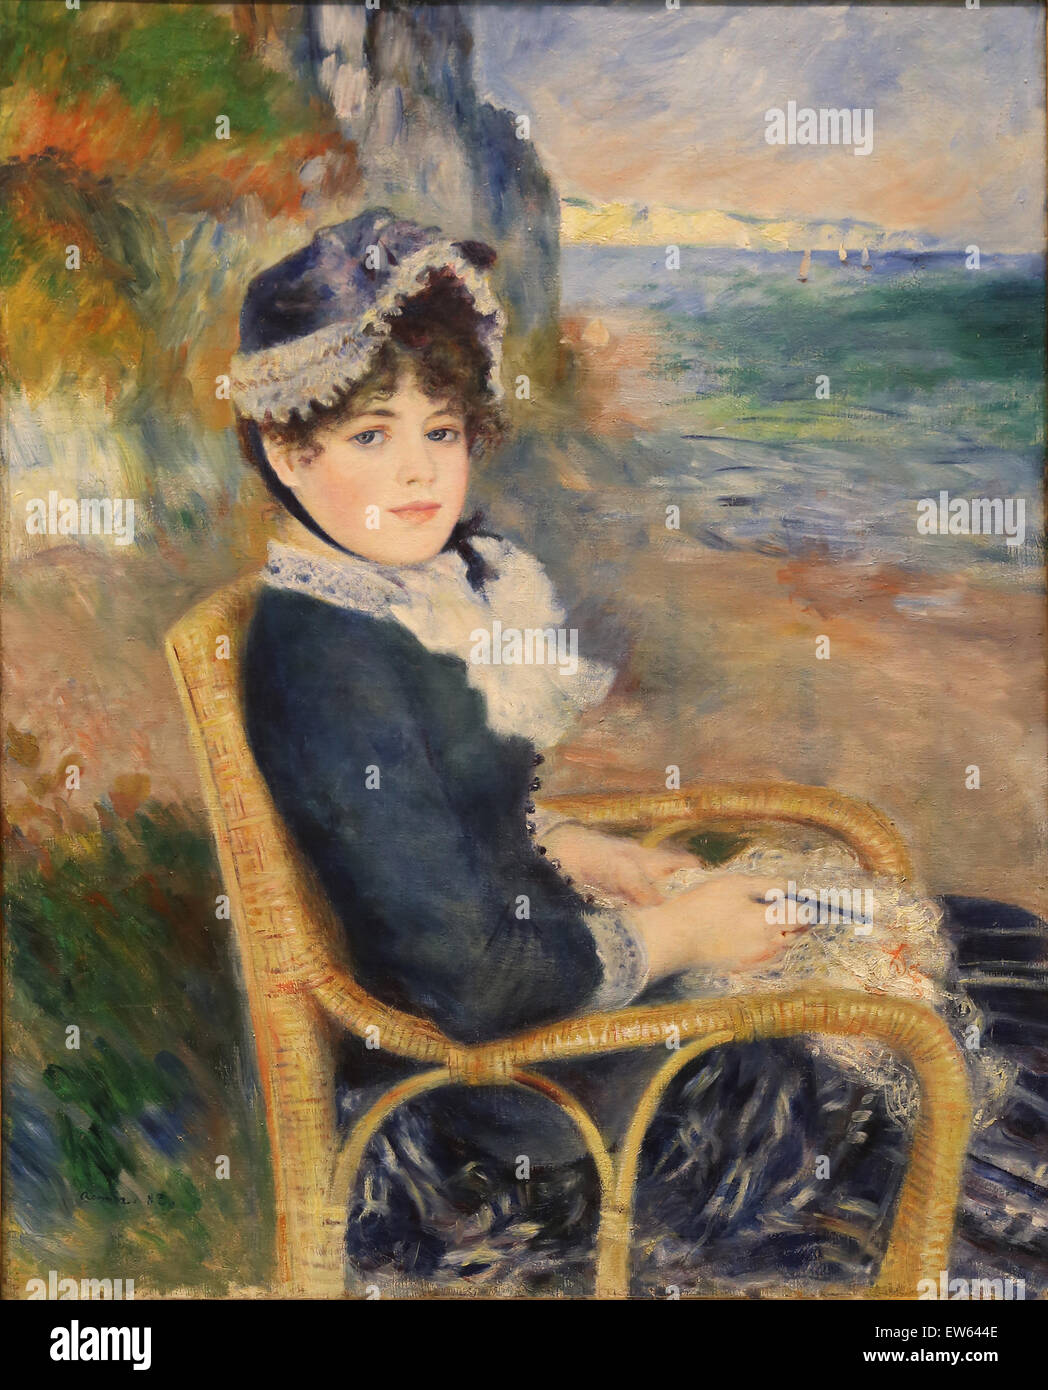 Auguste Renoir (1841-1919). Le peintre français. Par la mer, 1883. Huile sur toile. Metropolitan Museum of Art de New York. USA. Banque D'Images